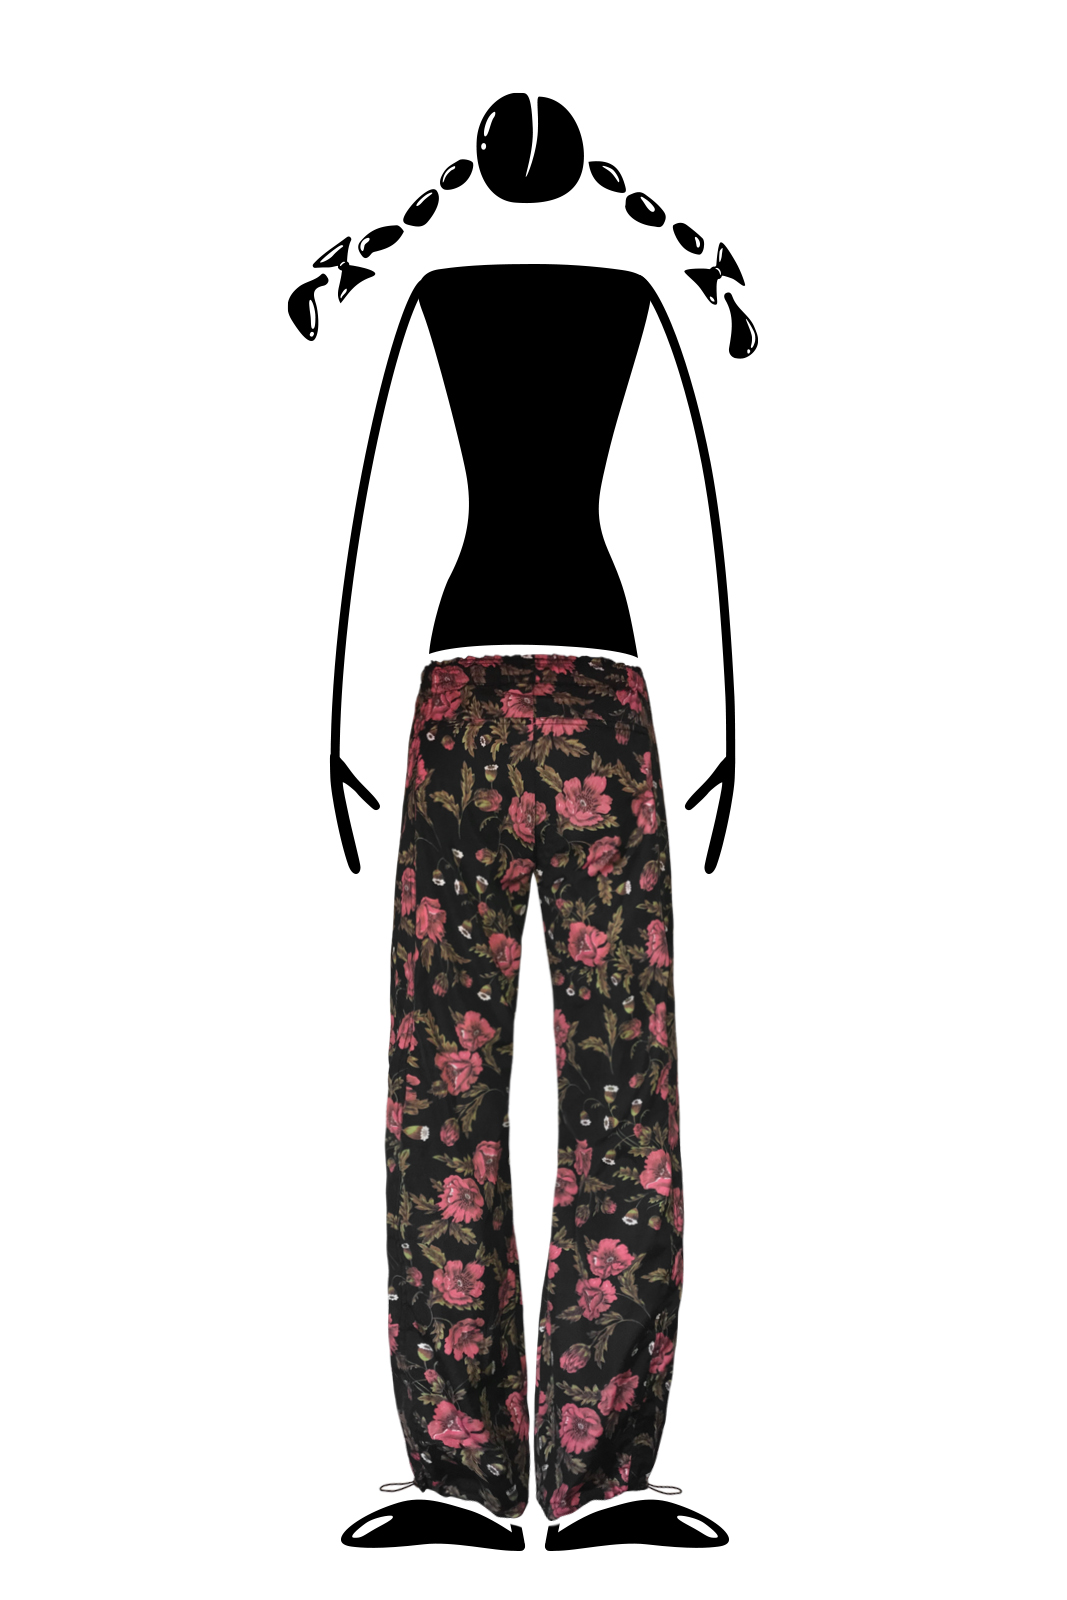 pantalon Femme décoration florale noir VIOLET Monvic multiflower